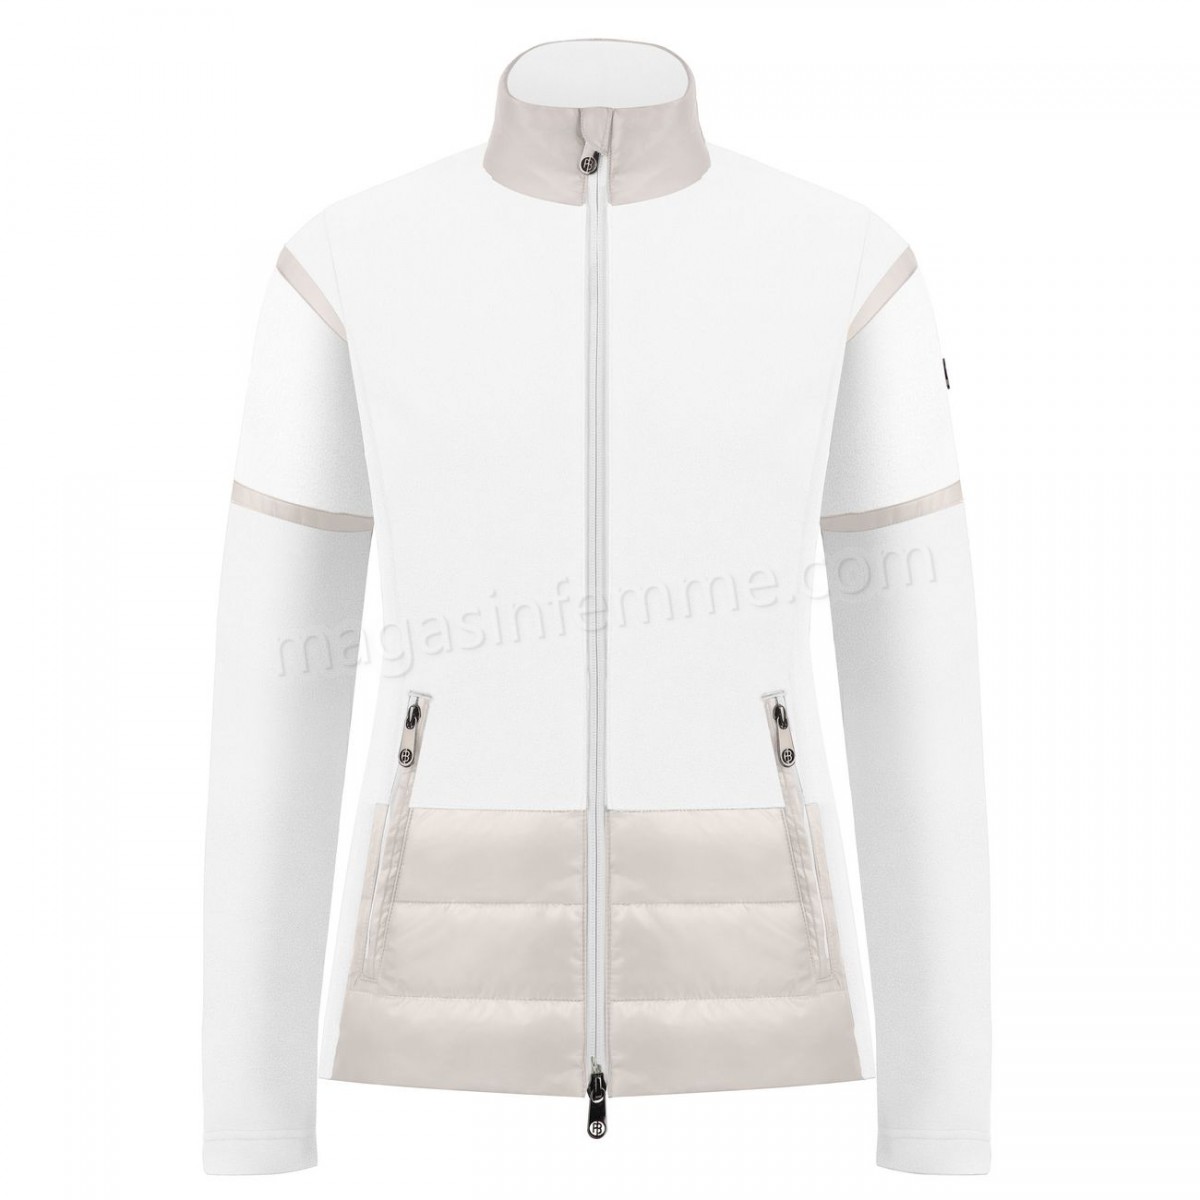 Poivre Blanc-Sports d'hiver femme POIVRE BLANC Veste Polaire Poivre Blanc Hybrid Fleece Jacket 1601 Multico White Femme en solde - -0